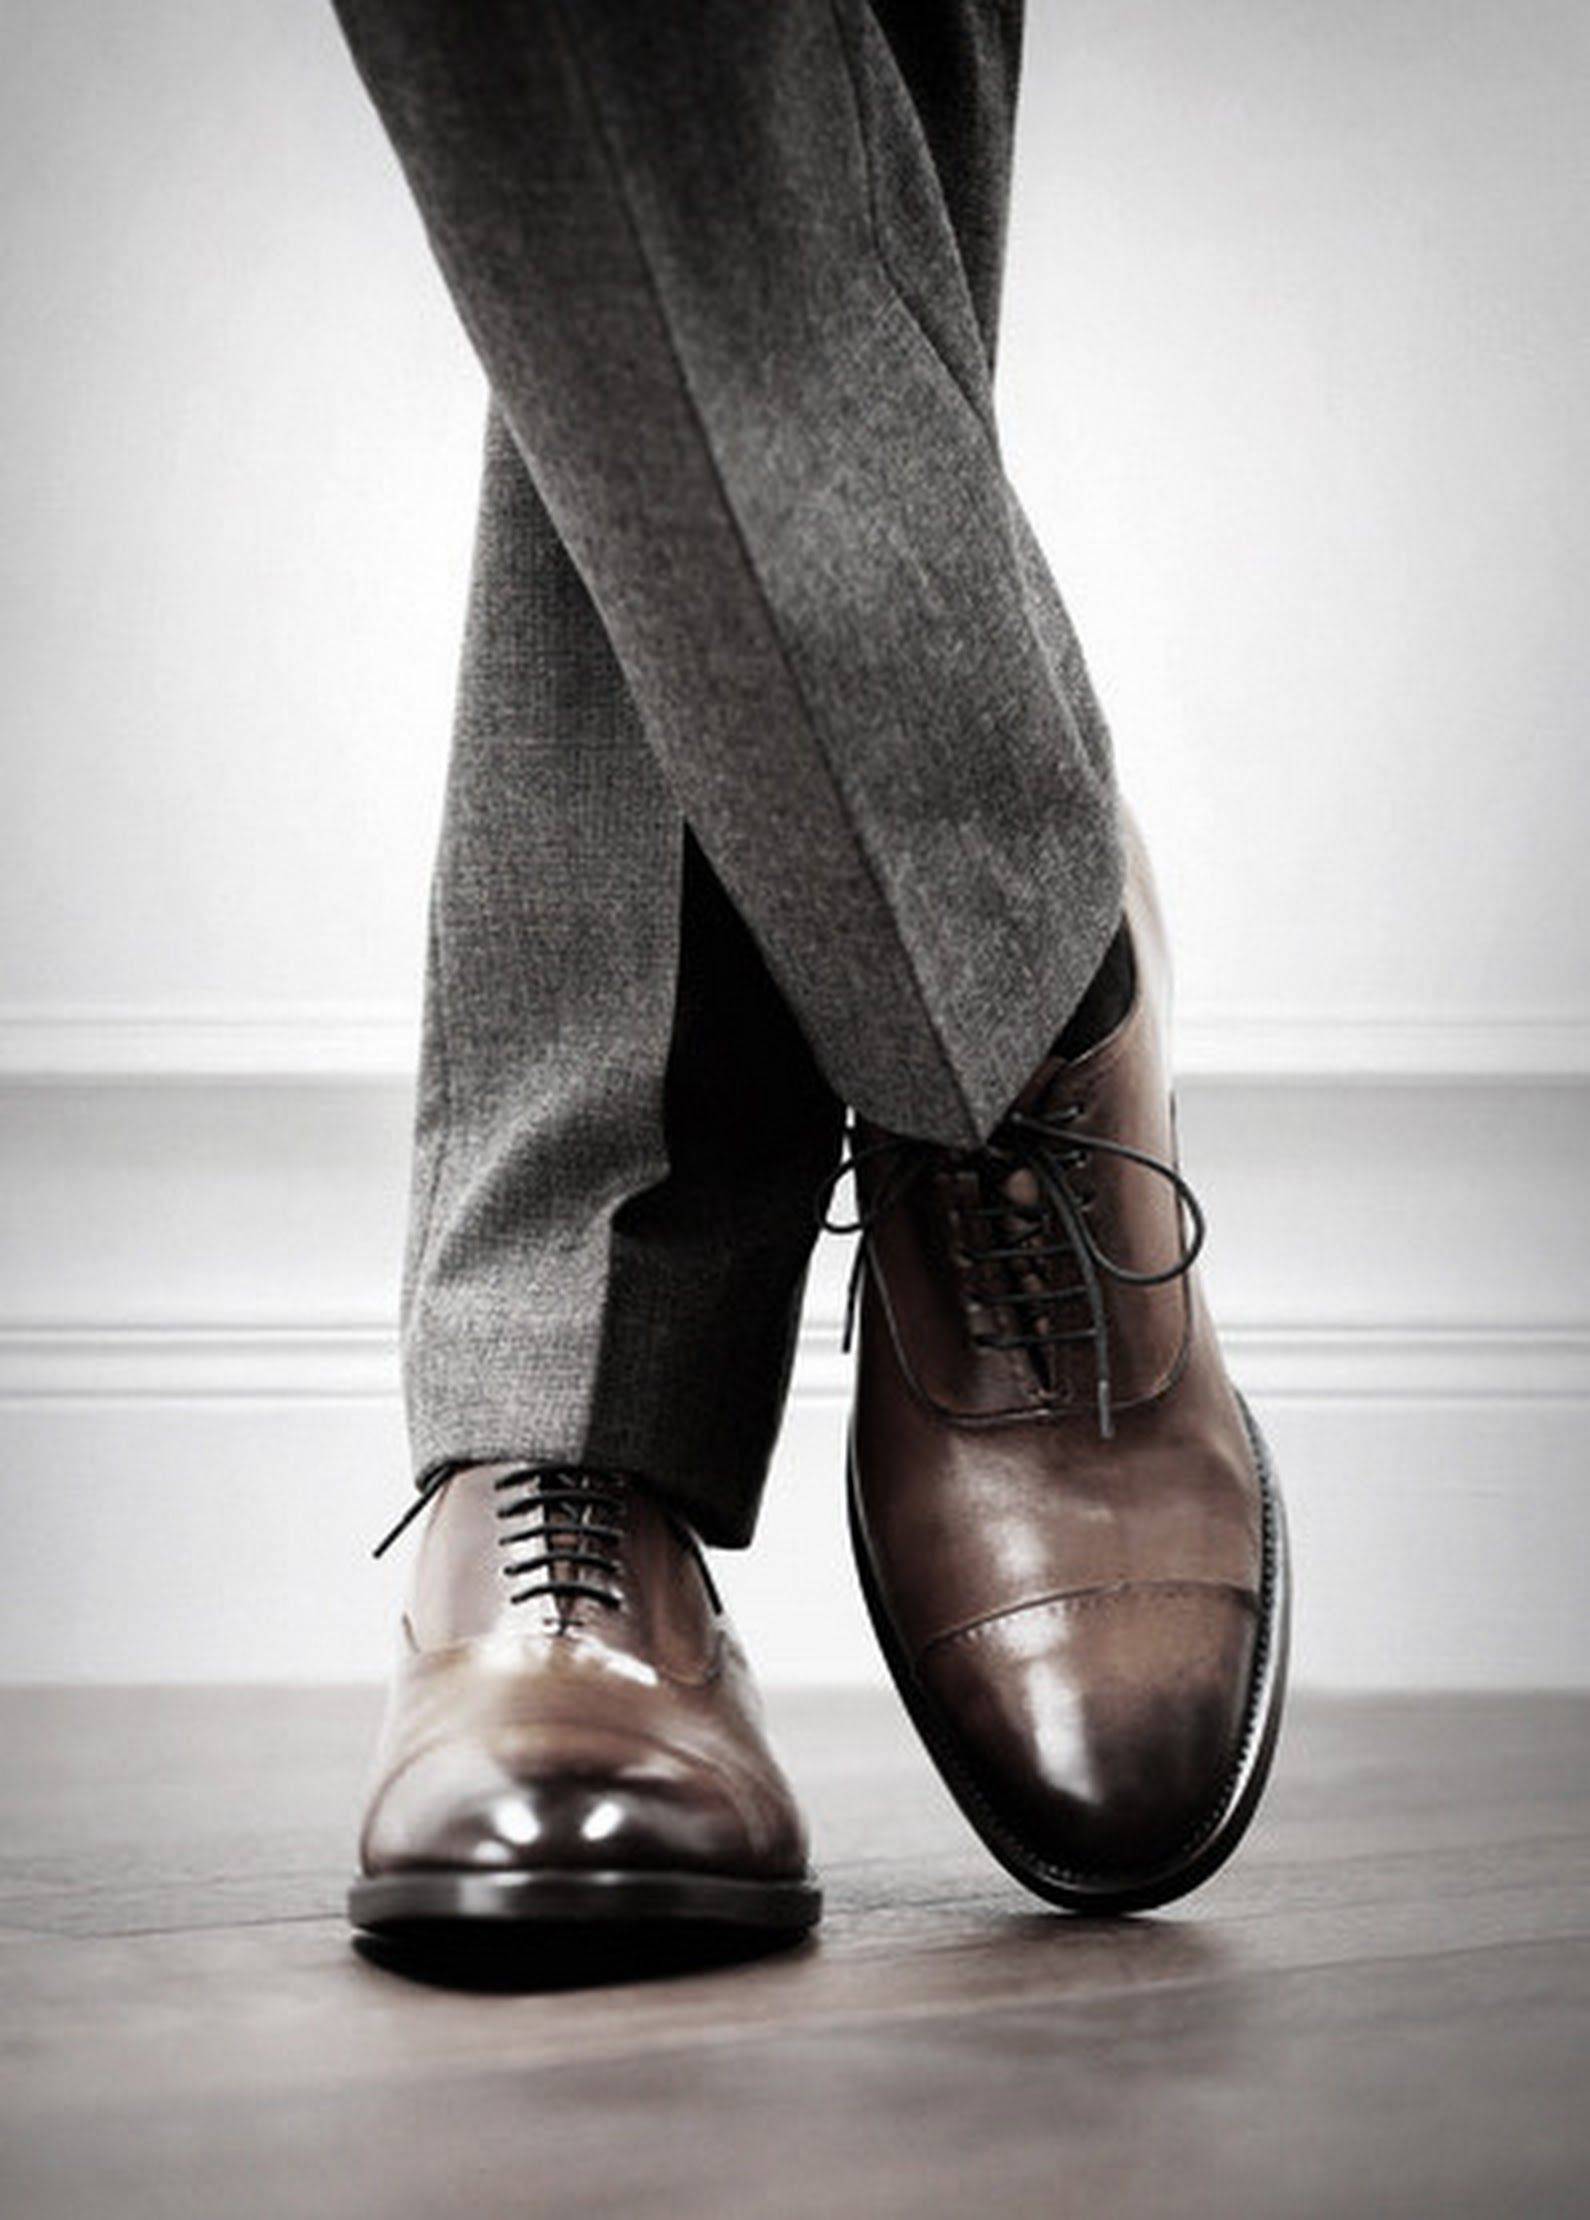 С чем носить мужские туфли